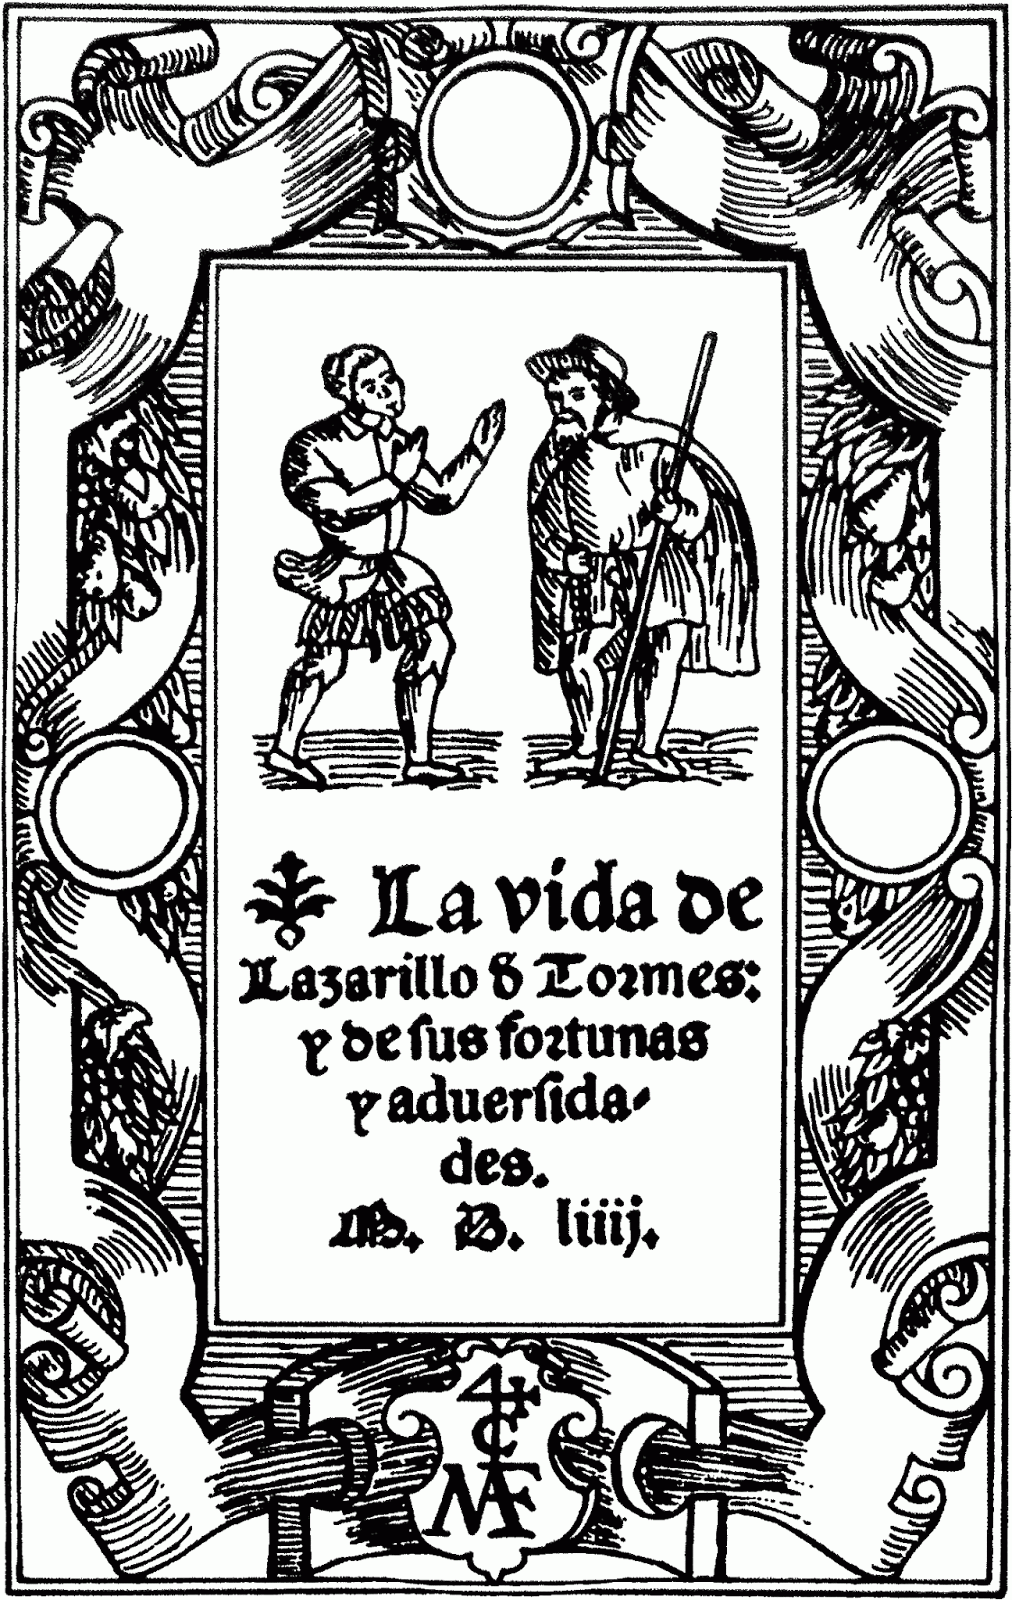 Trabales: Analisis Textual de "El Lazarillo de Tormes" Anonimo.